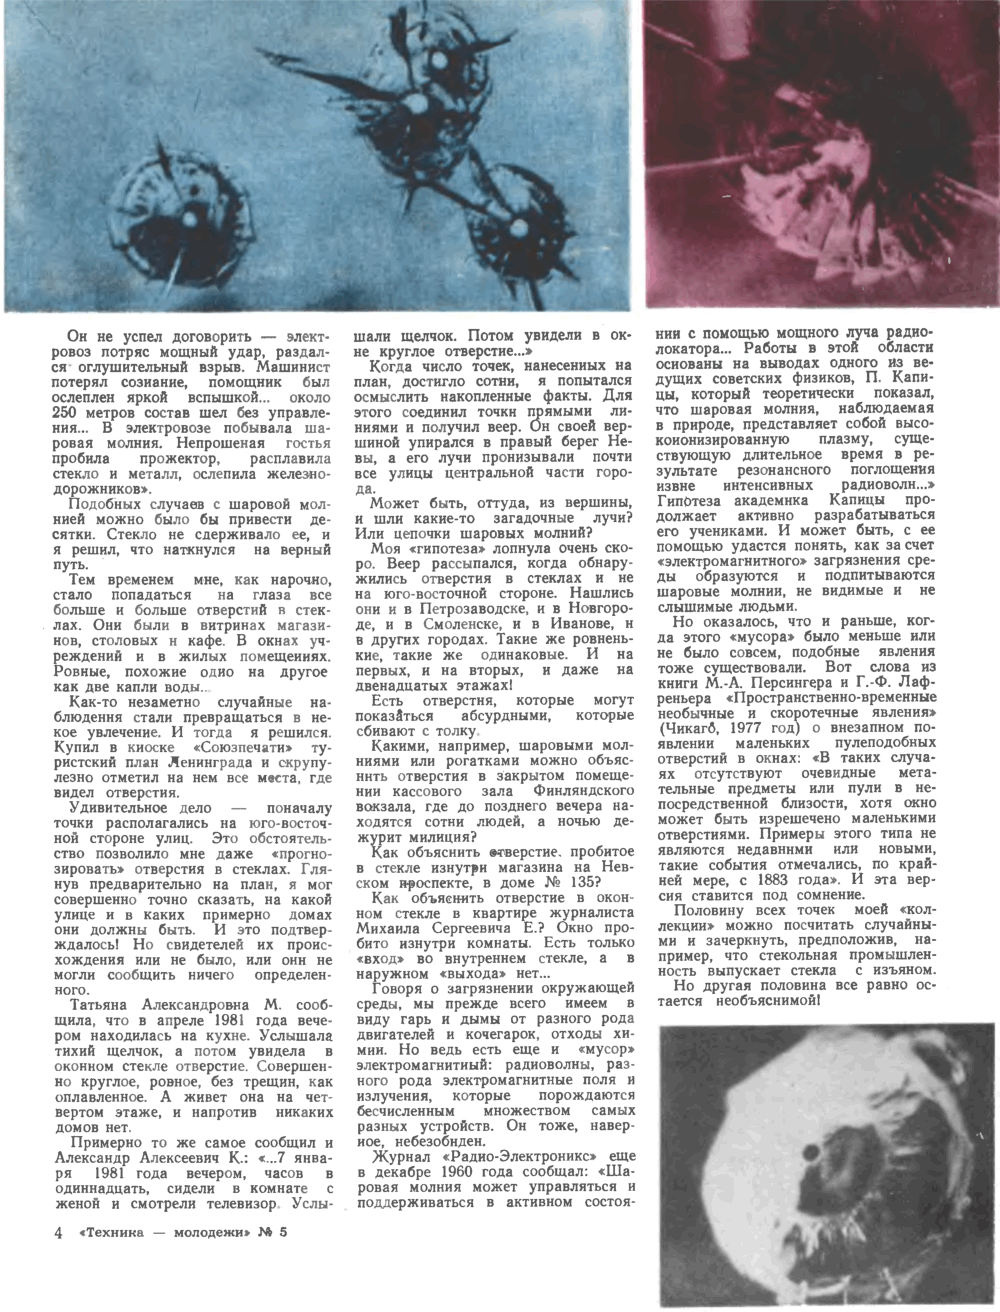 Тайна пробитых стекол. М. Мамедов, Техника — Молодёжи, 1982, №5, с.48-49. Фотокопия №2